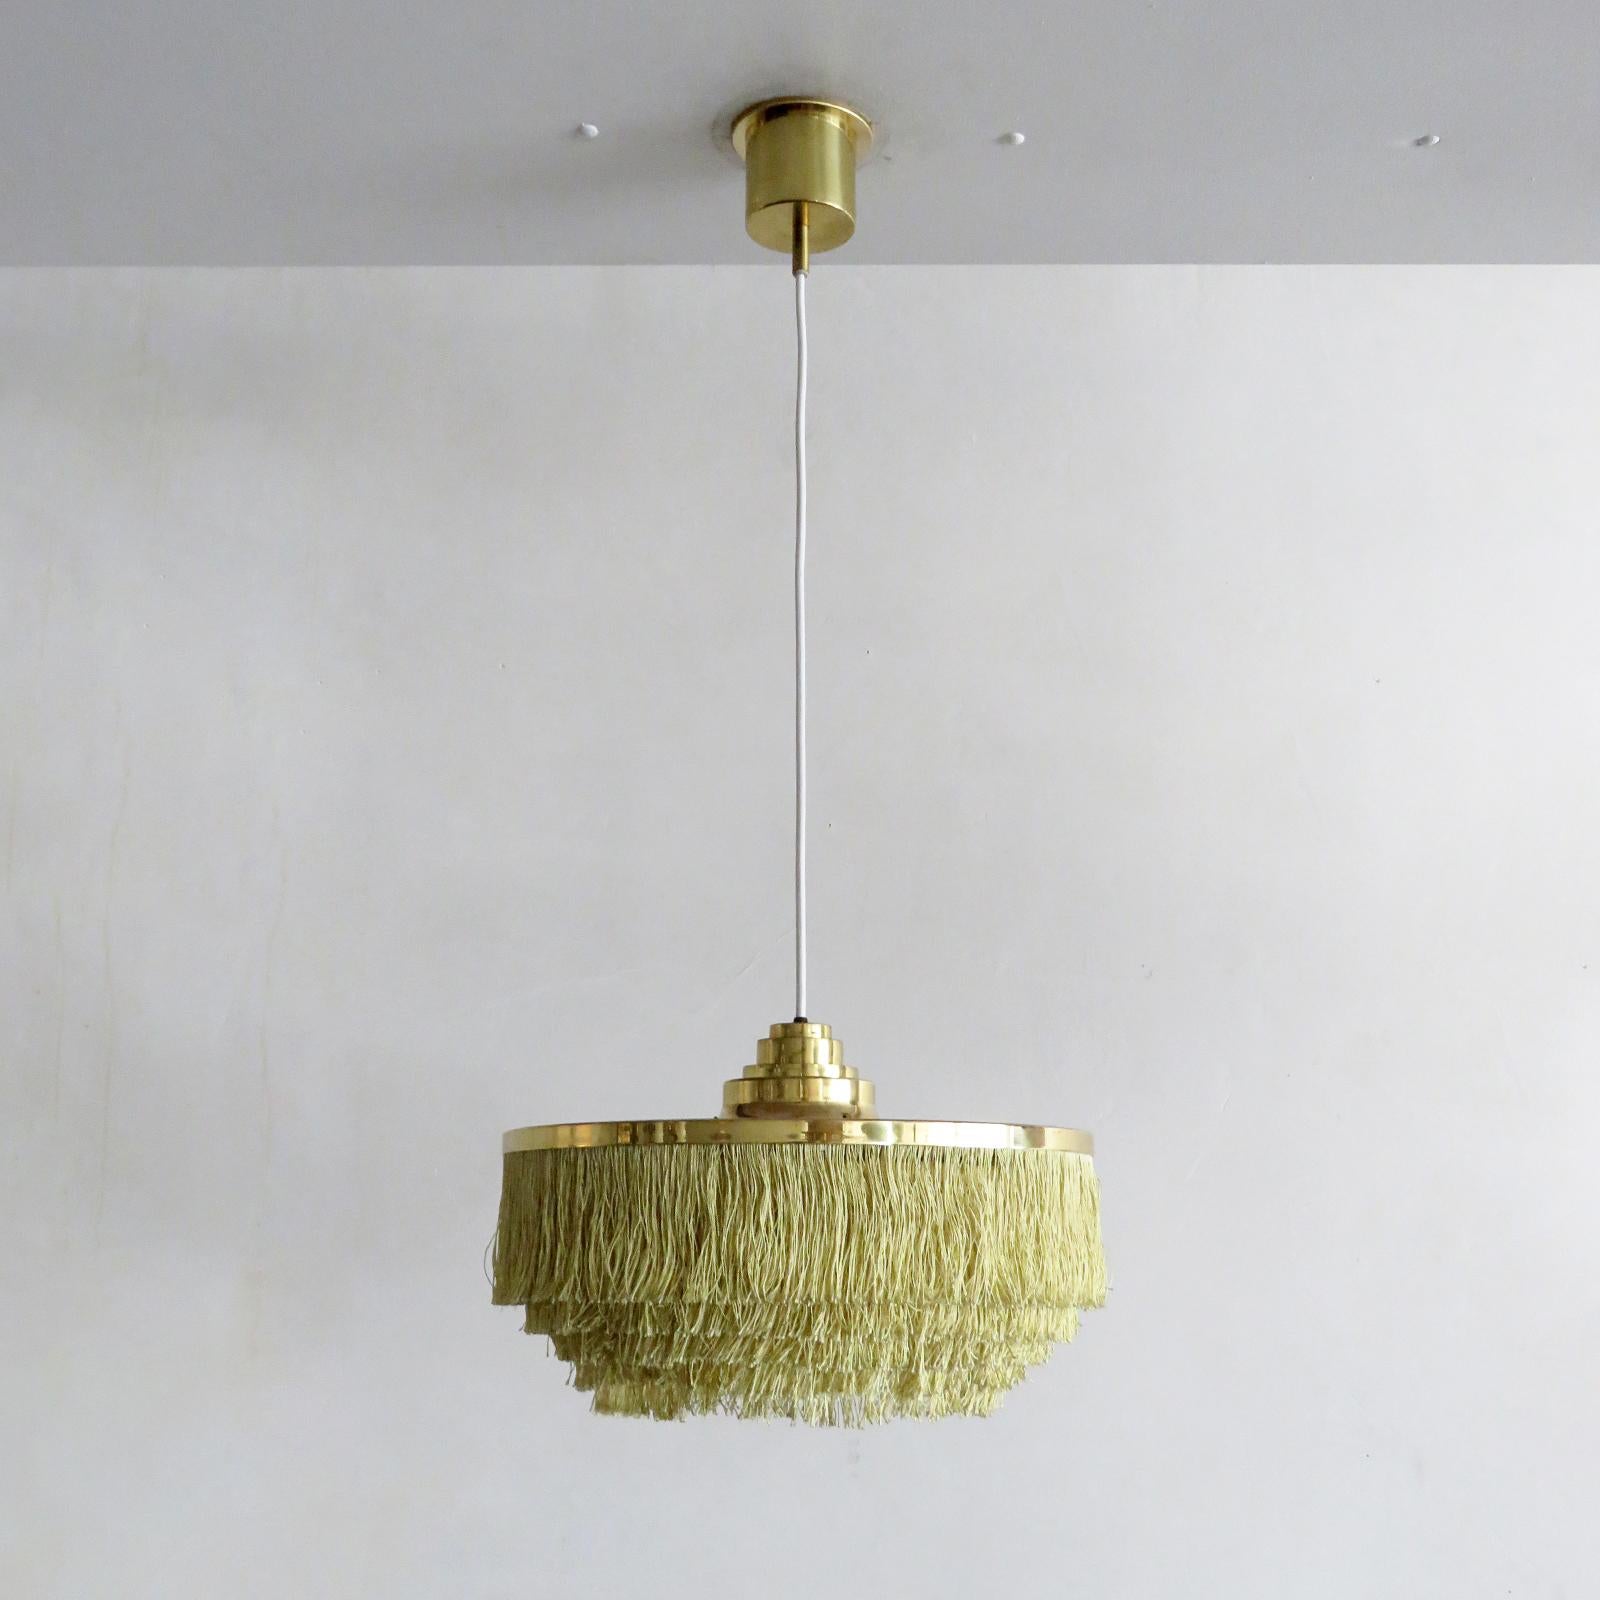 Merveilleuse lampe suspendue de Hans-Agne Jakobsson pour Agnes, Suède, 1960, avec cinq niveaux de cordon de soie à franges jaune/or, cadre en laiton et baldaquin en laiton d'origine. La hauteur totale (montrée à 36